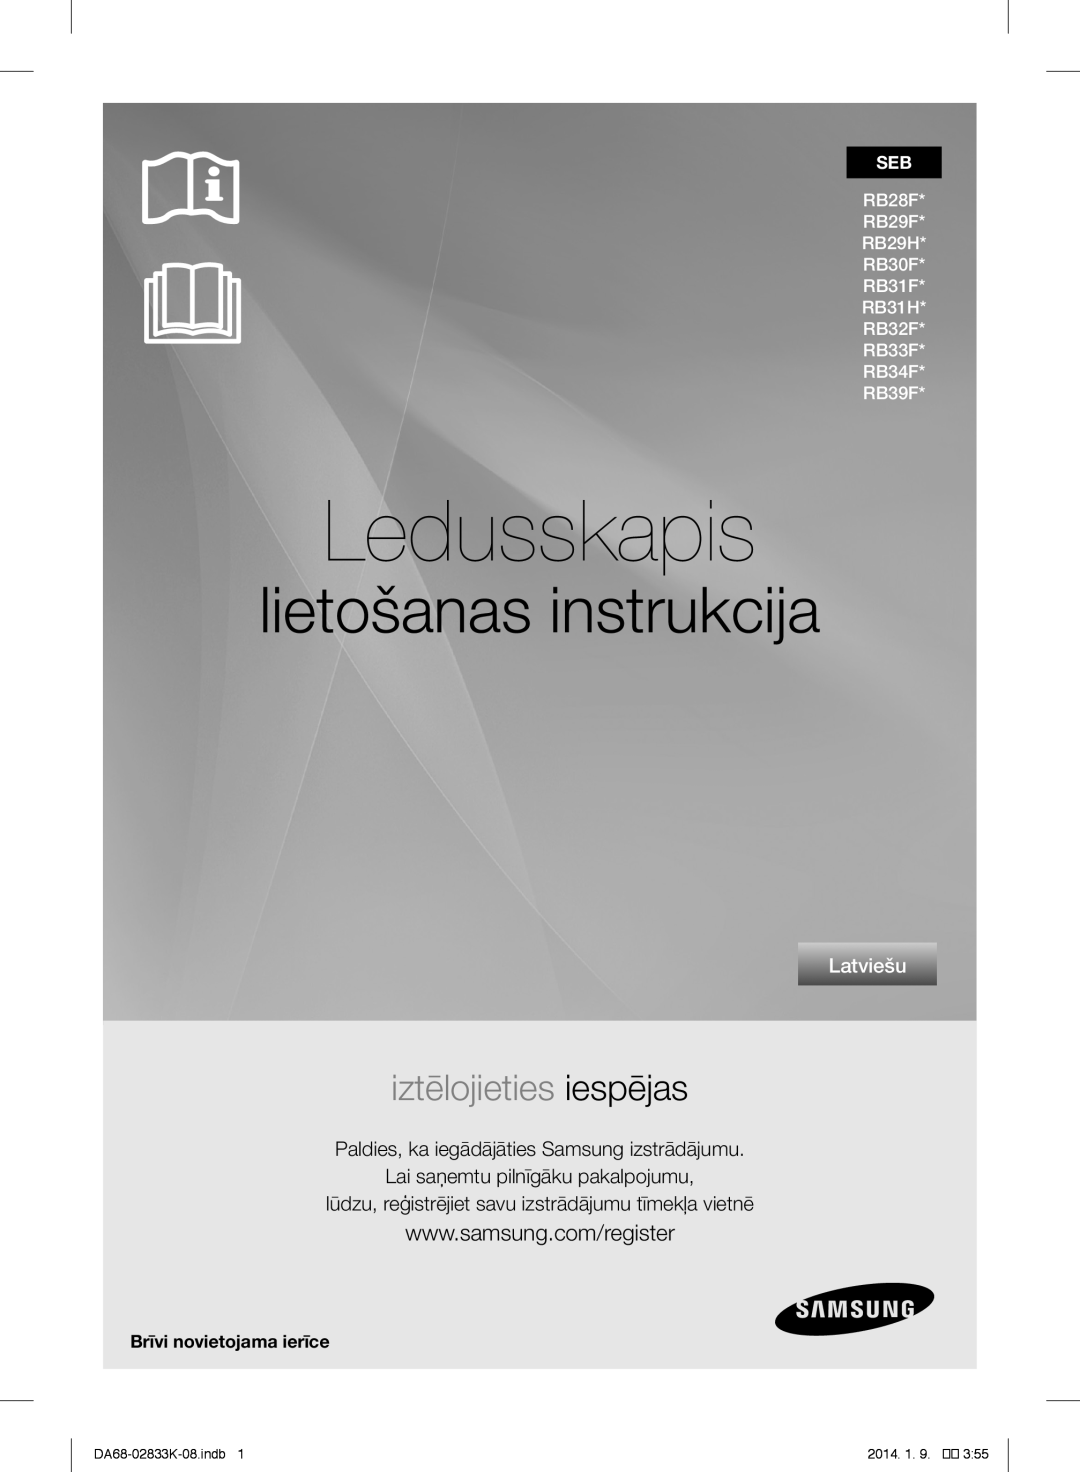 Samsung RB31FERNDEF/EF Ledusskapis, lietošanas instrukcija, iztēlojieties iespējas, Latviešu, DA68-02833K-08.indb, 2014. 1 